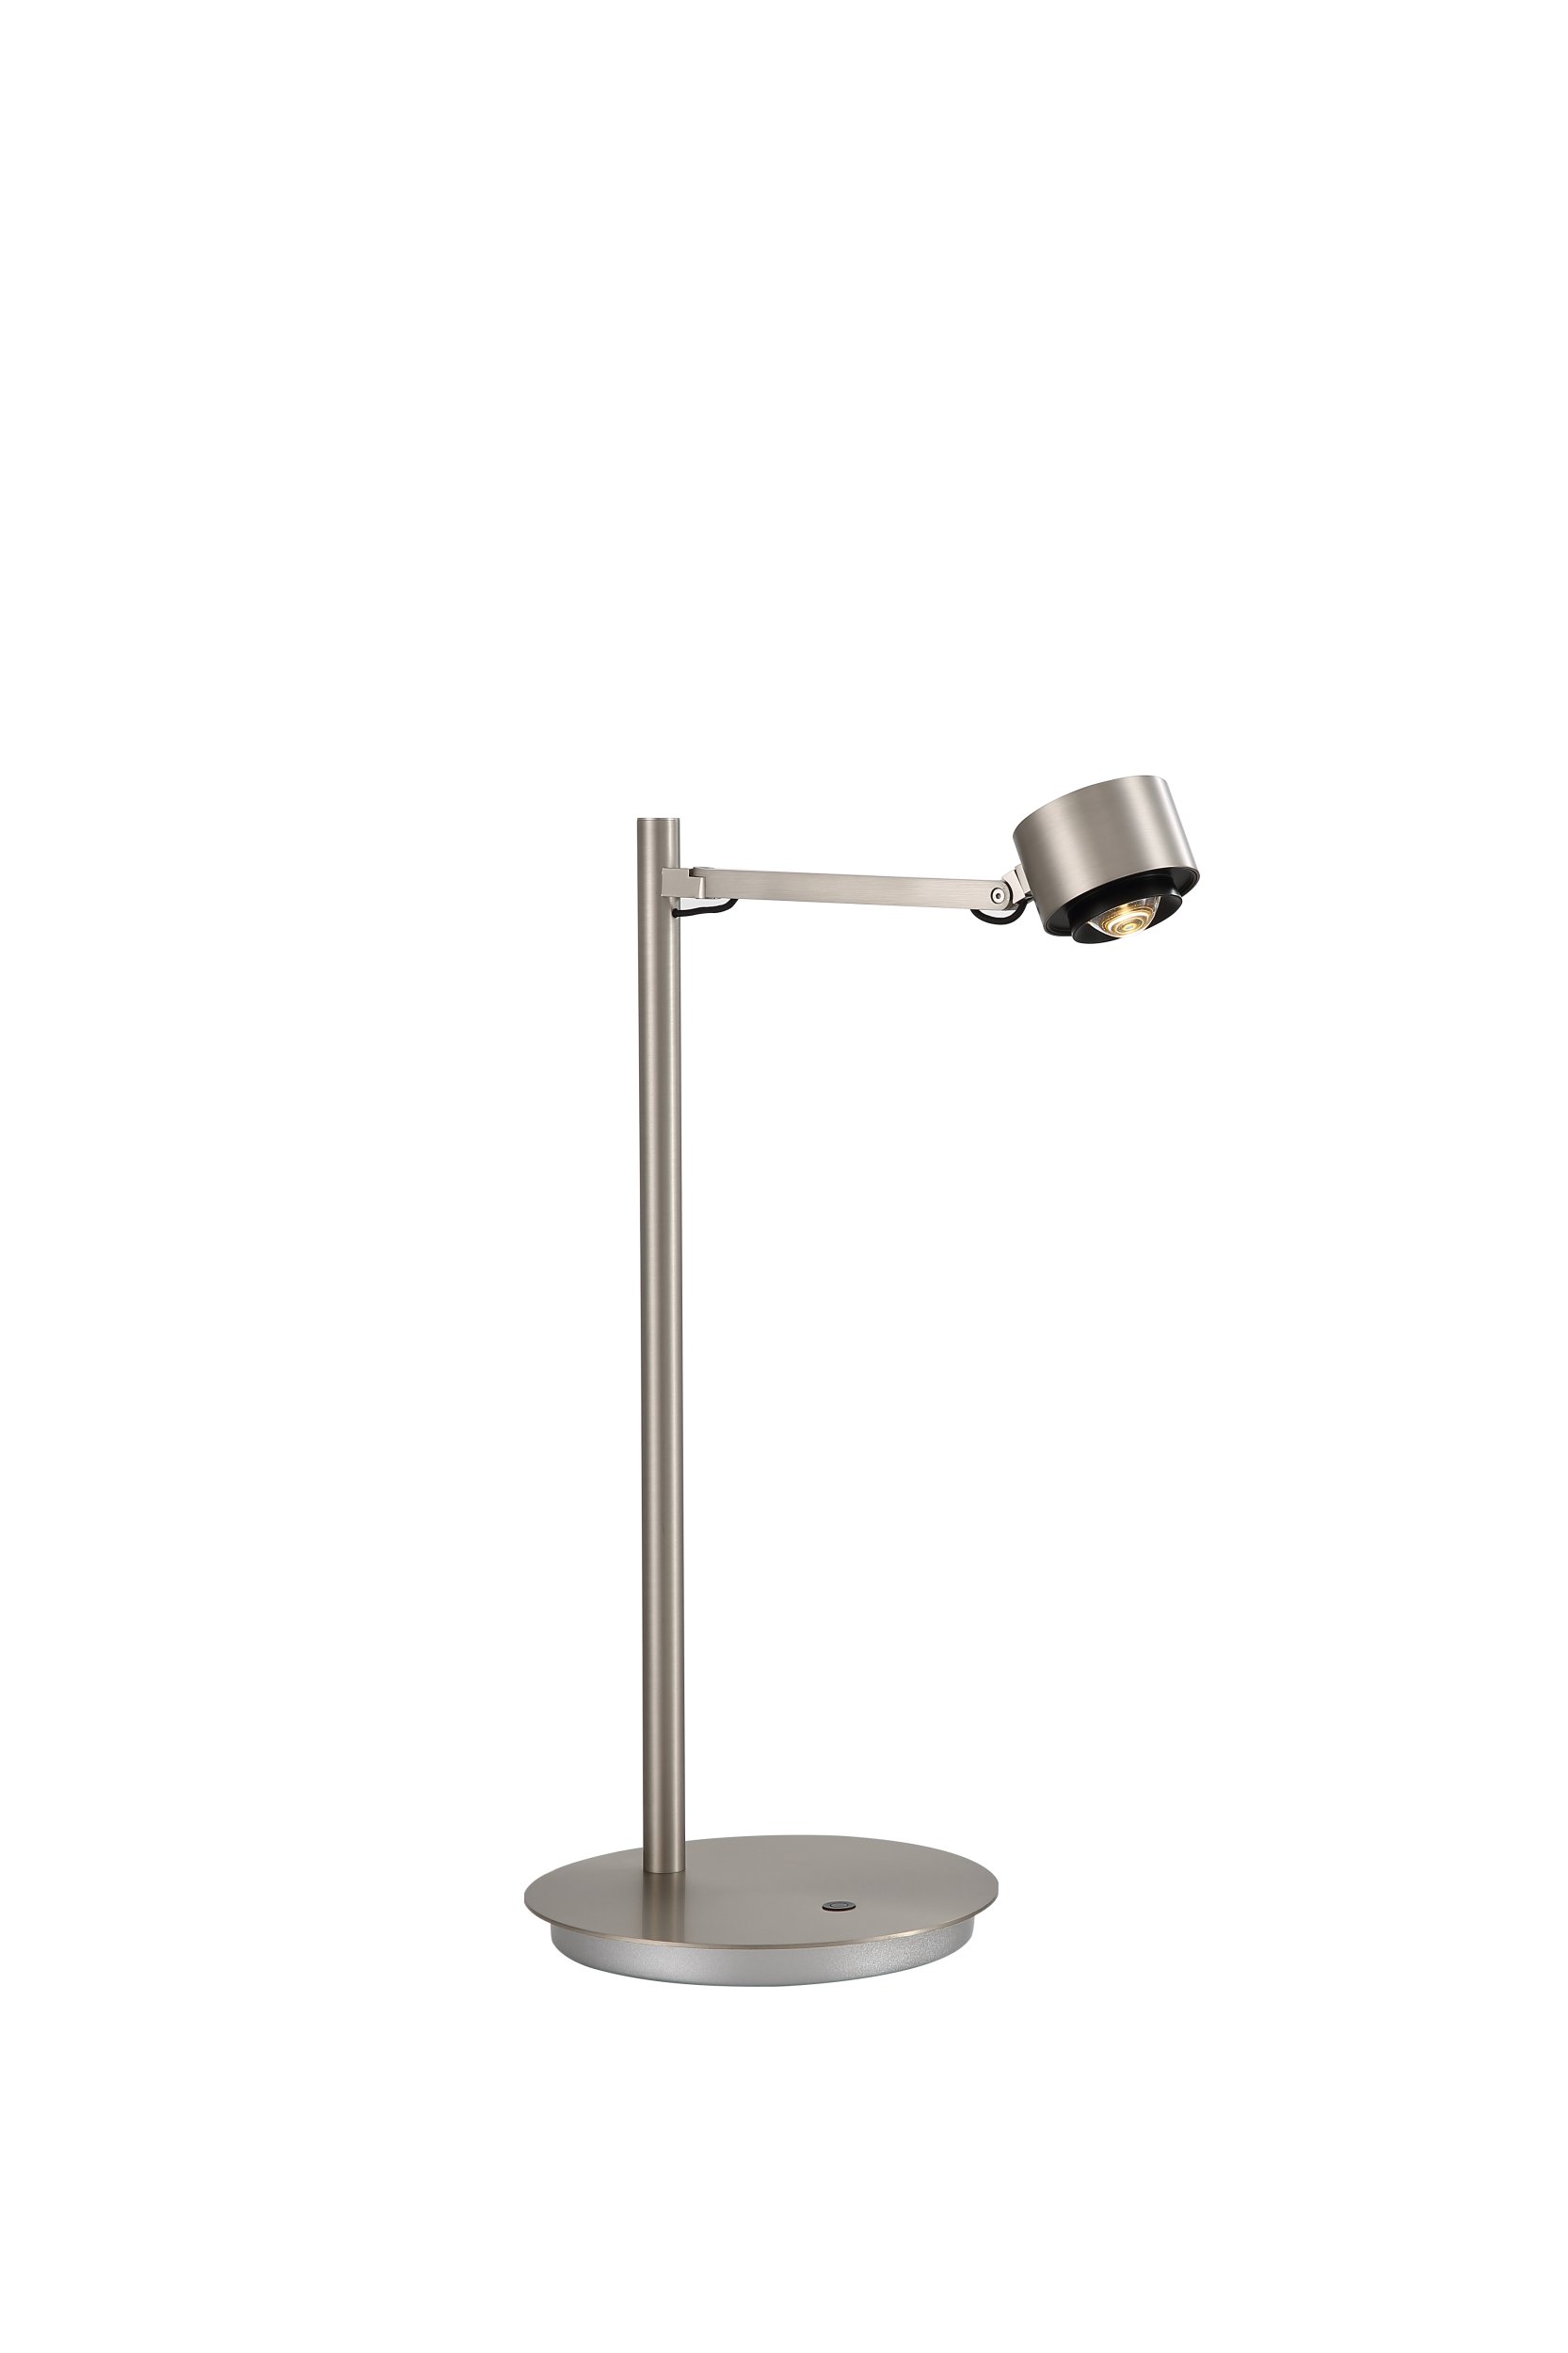 Офисная настольная лампа DesignLed JY 007531, цвет теплый - фото 1